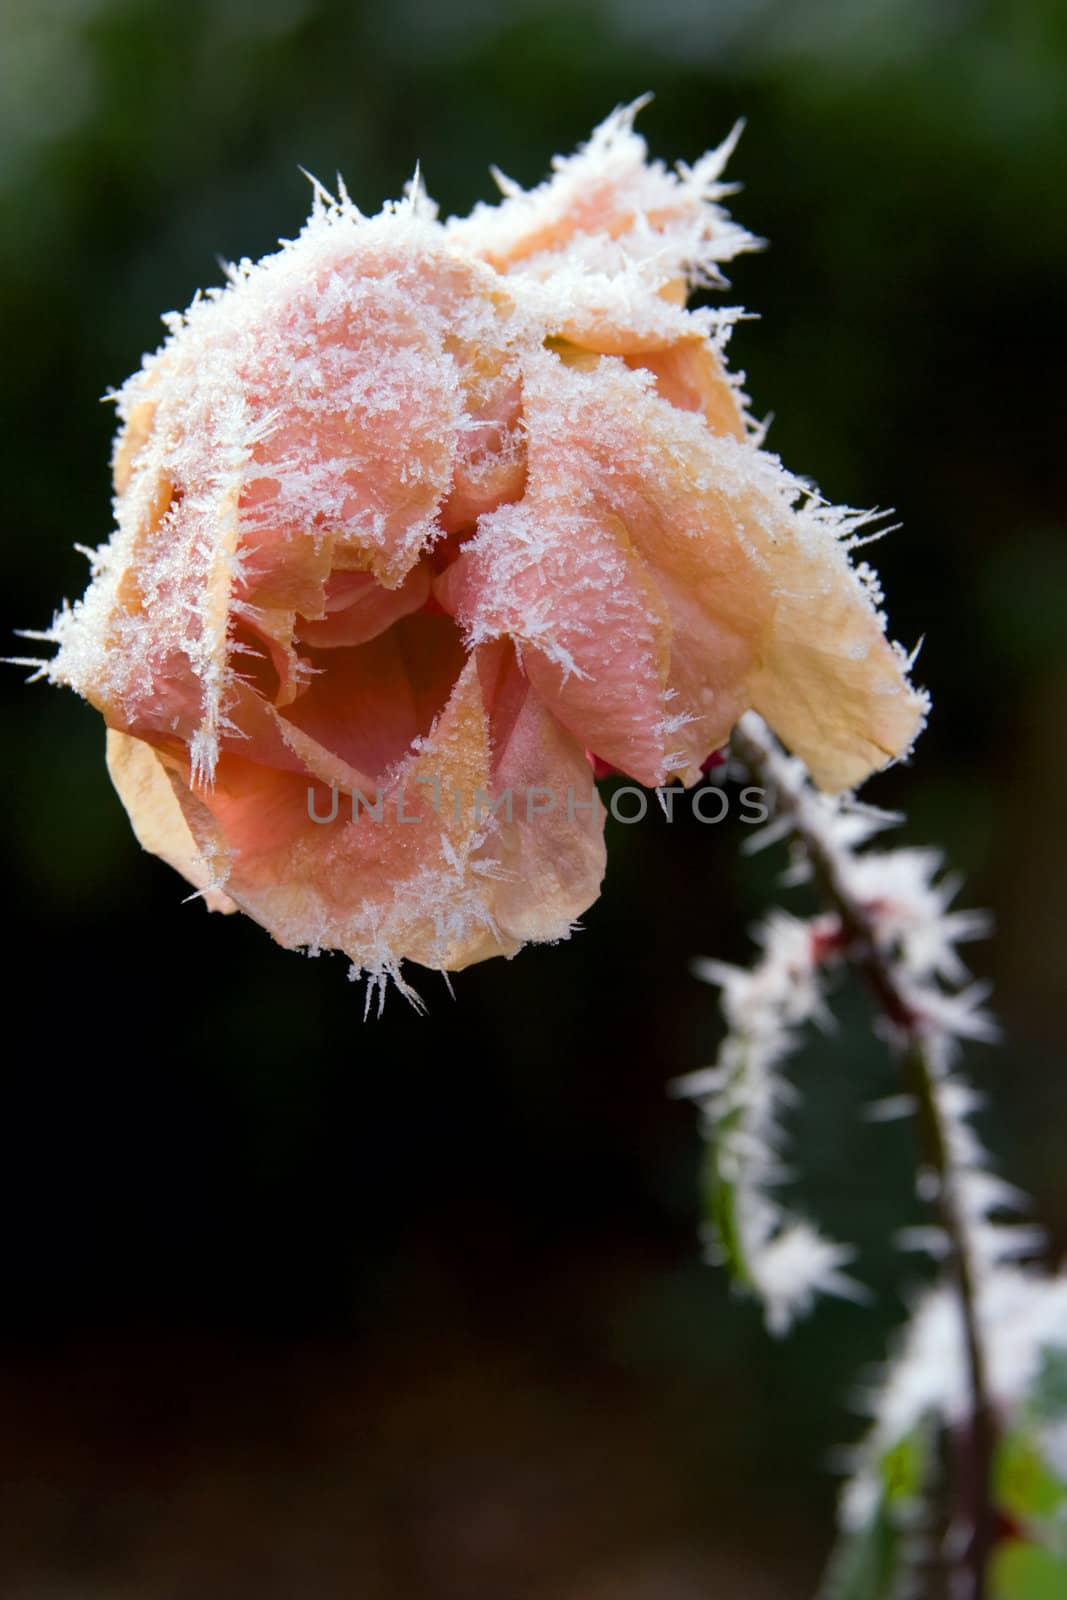 frozen rose by chrisroll